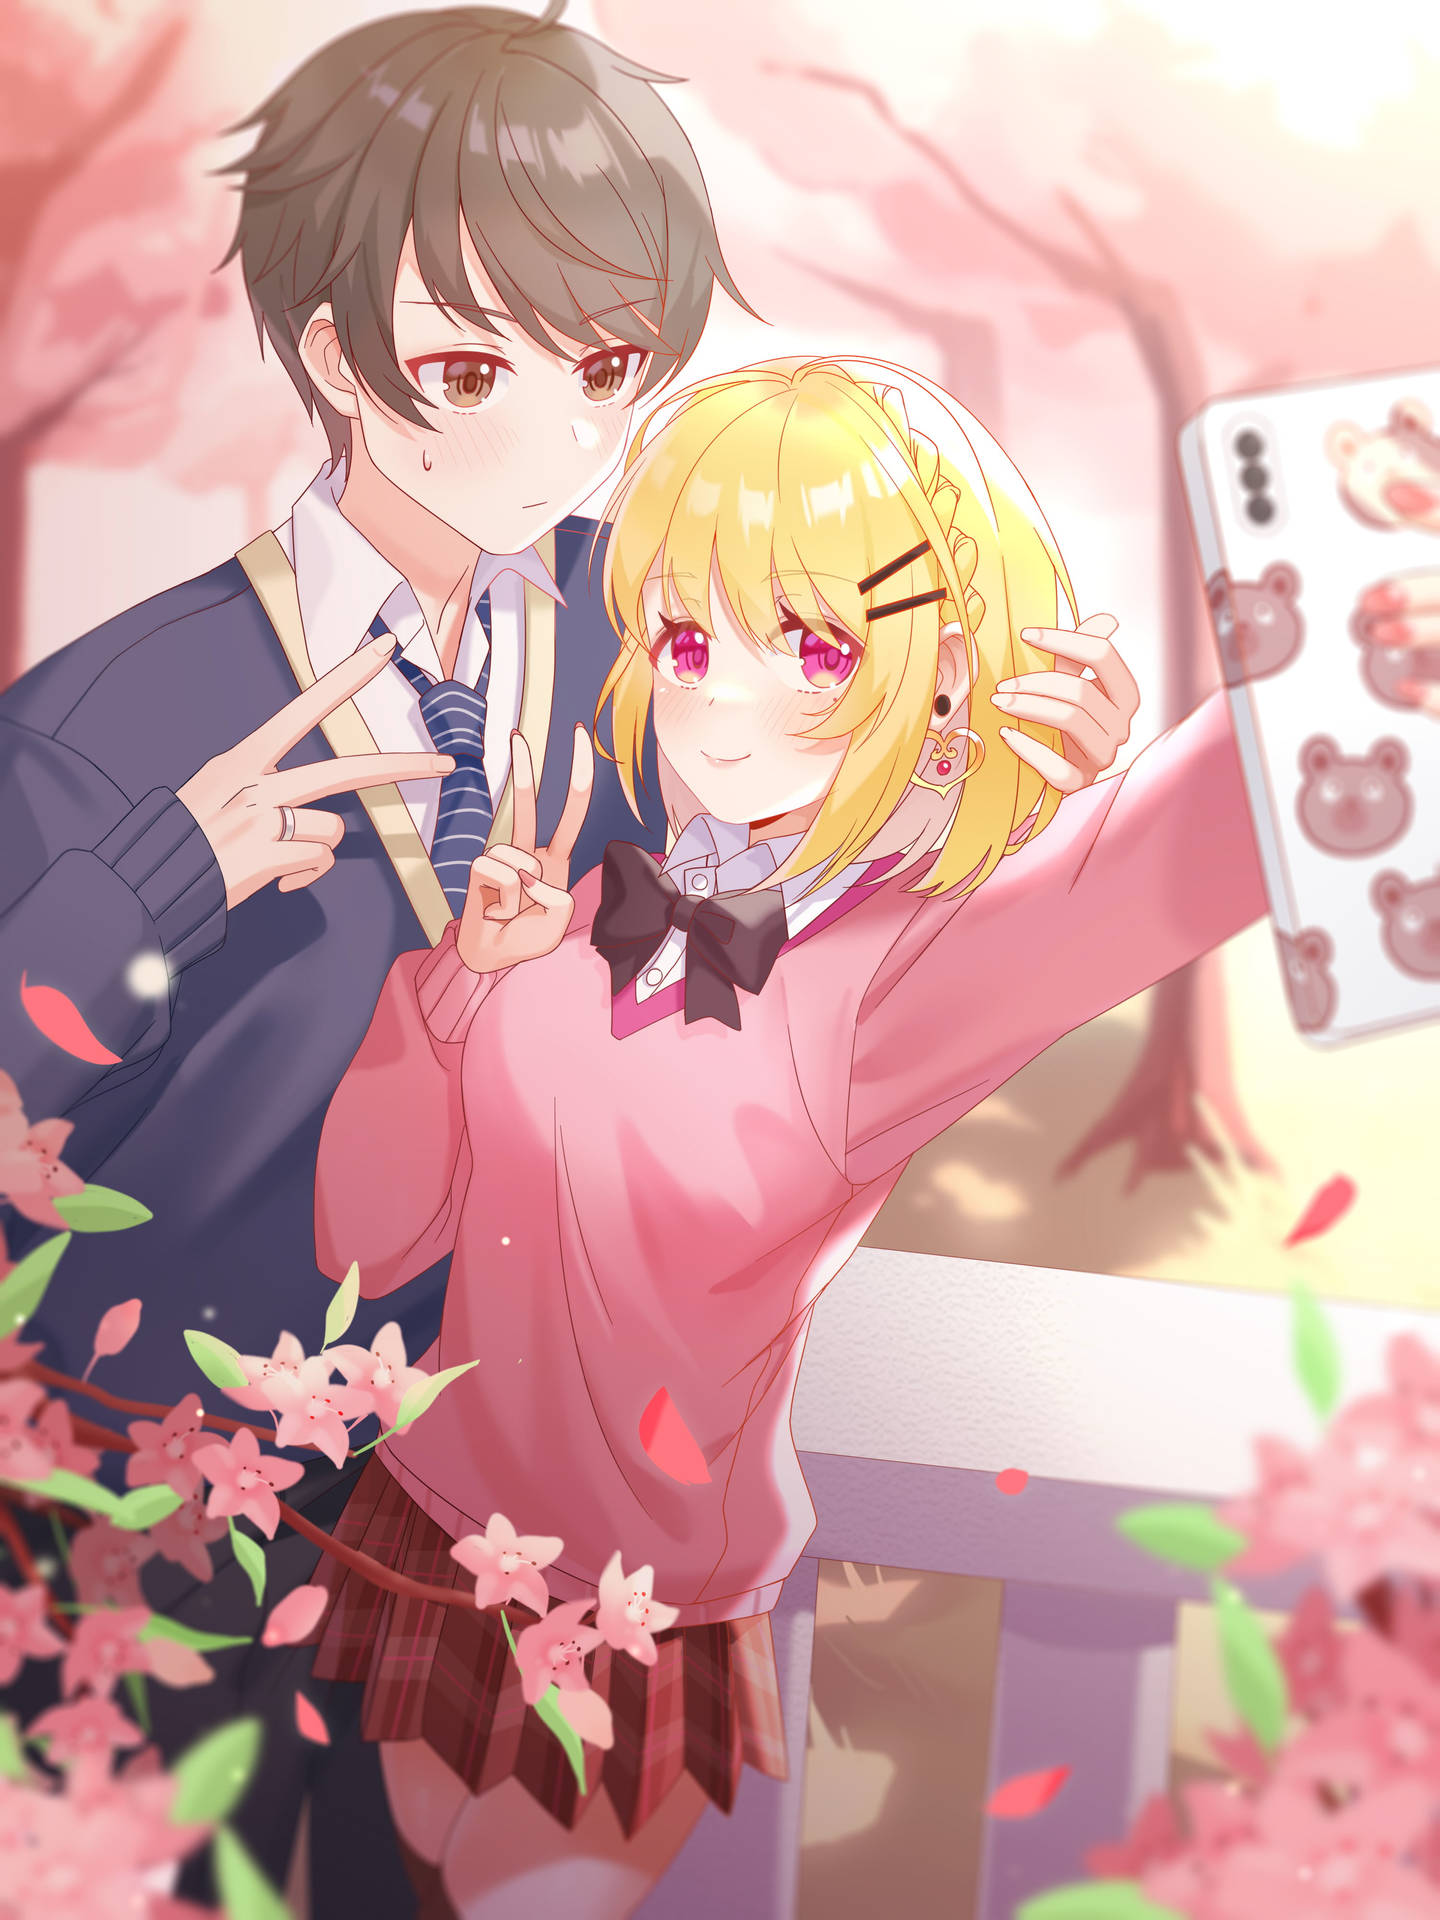 Selfie Aesthetic Anime Couple Digital Art Wallpaper